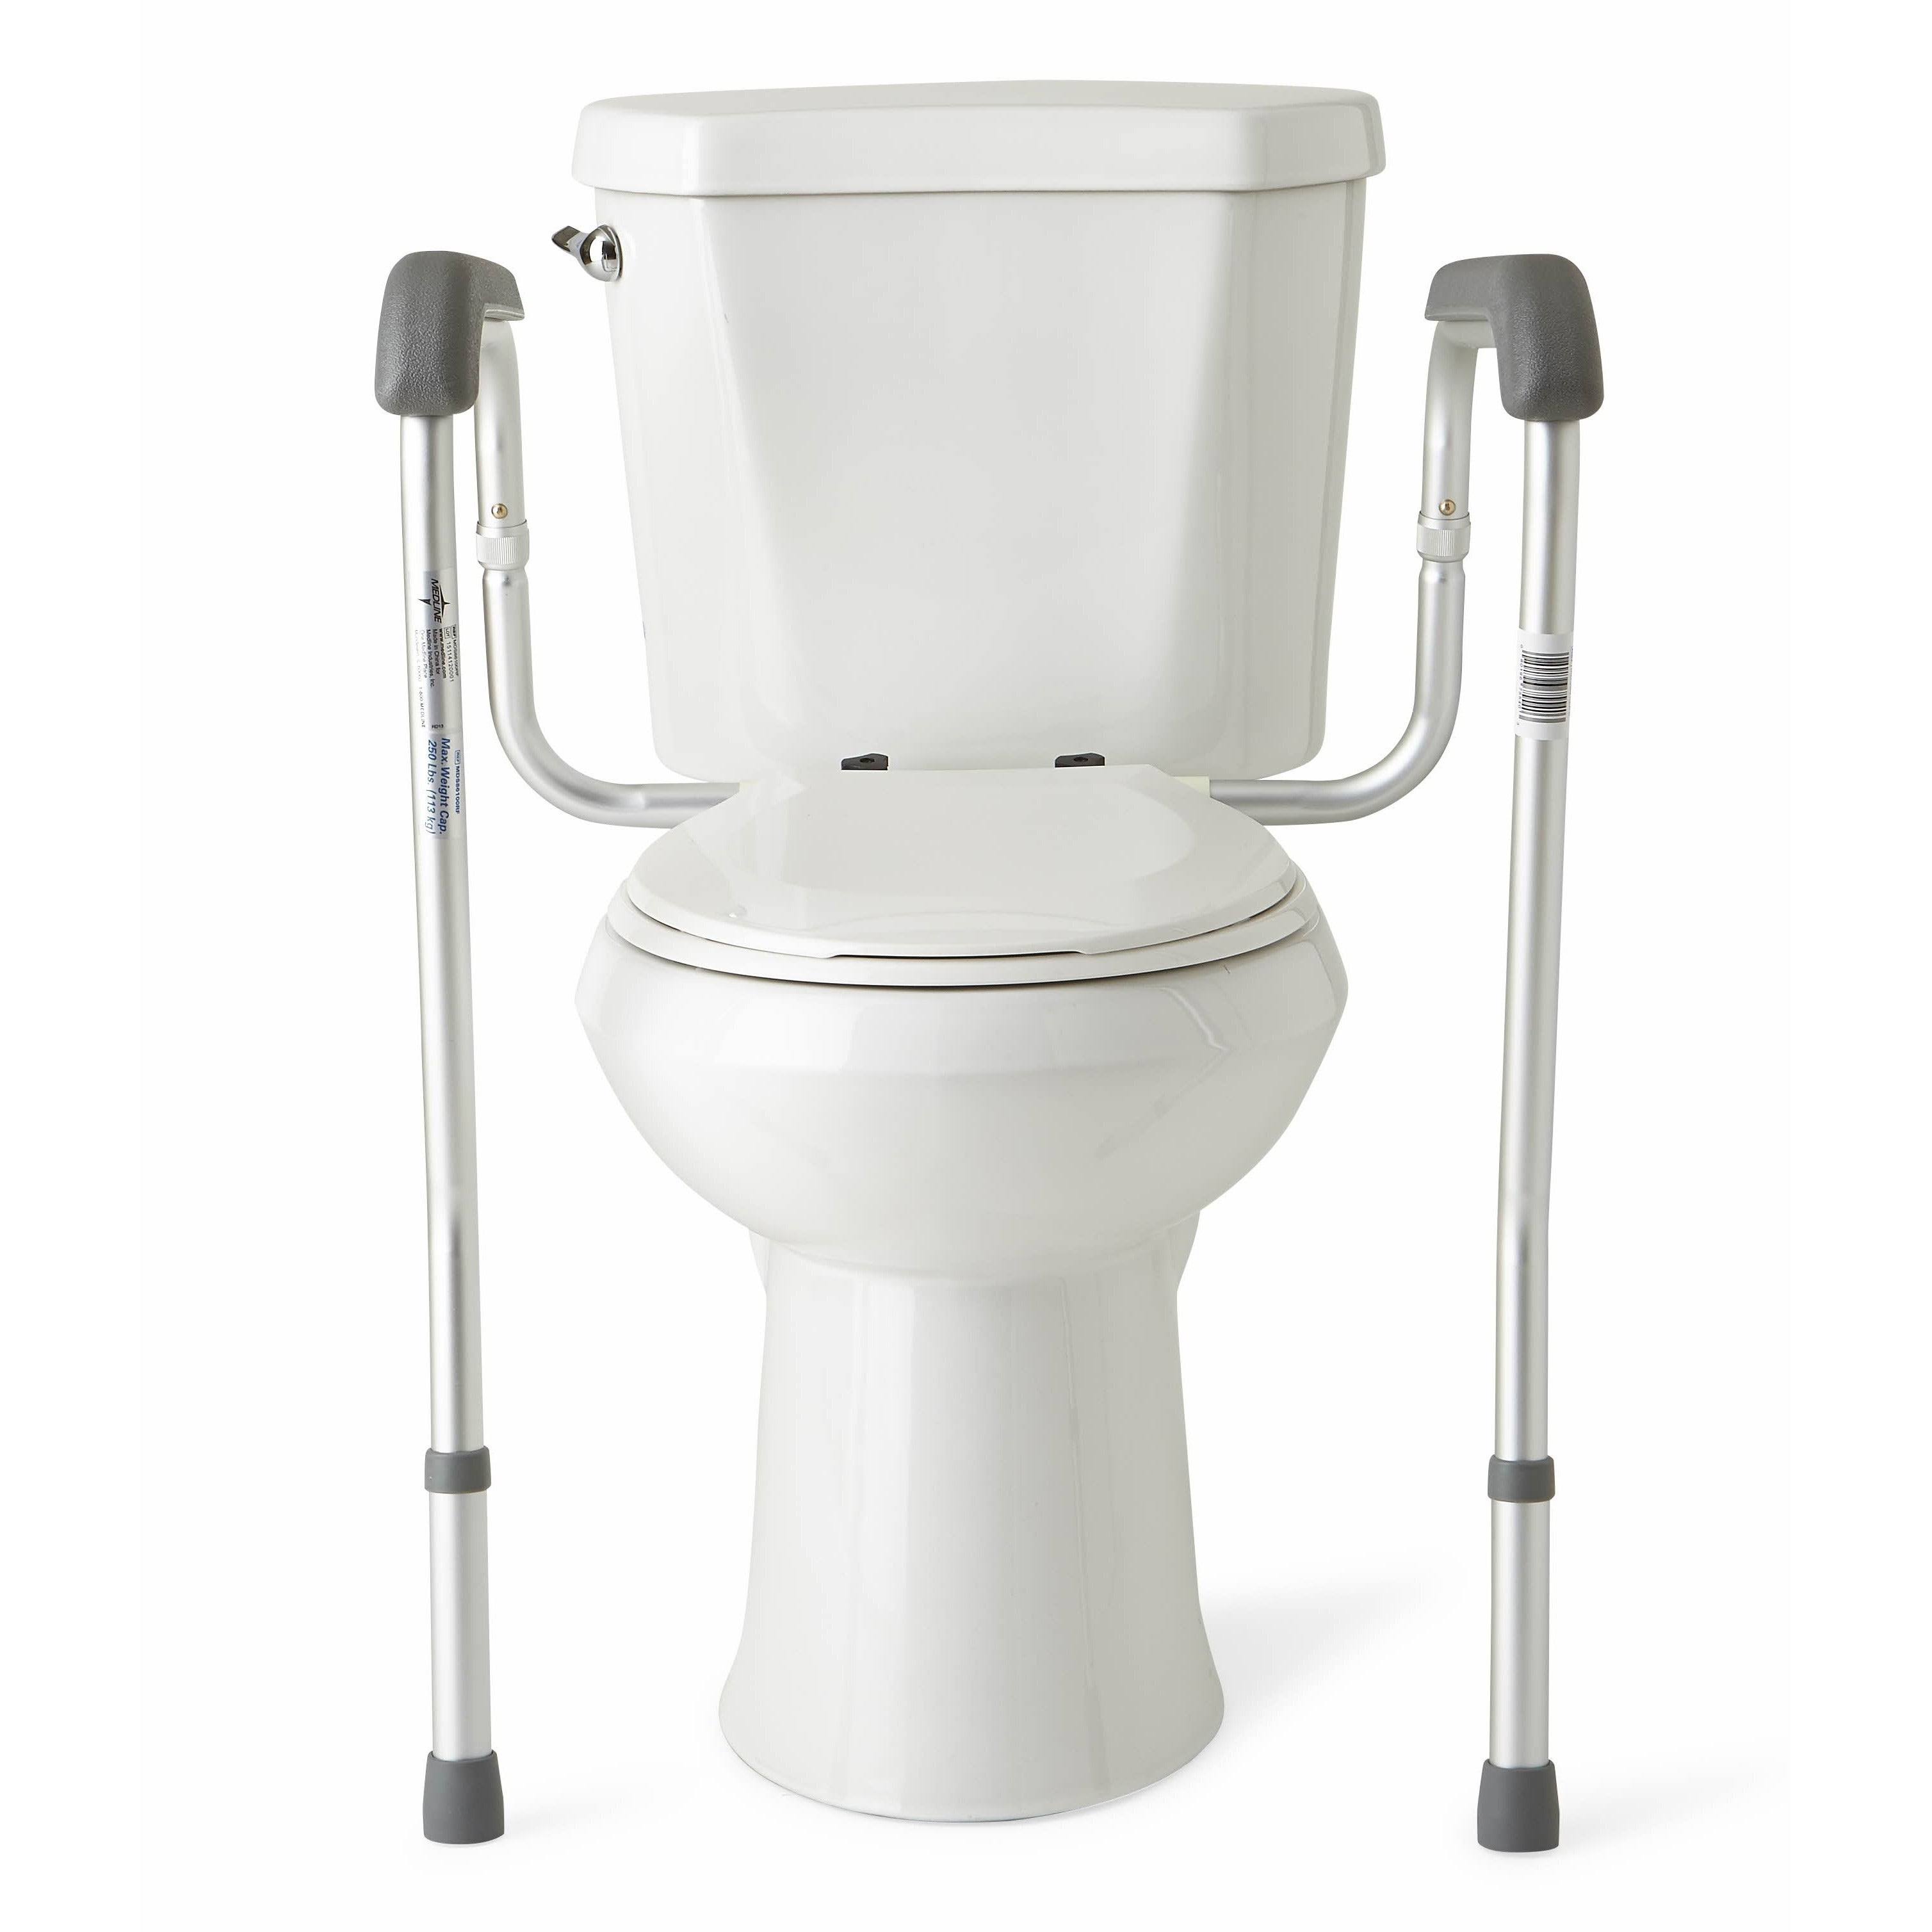 Medline Adjustable Toilet Safety Rails